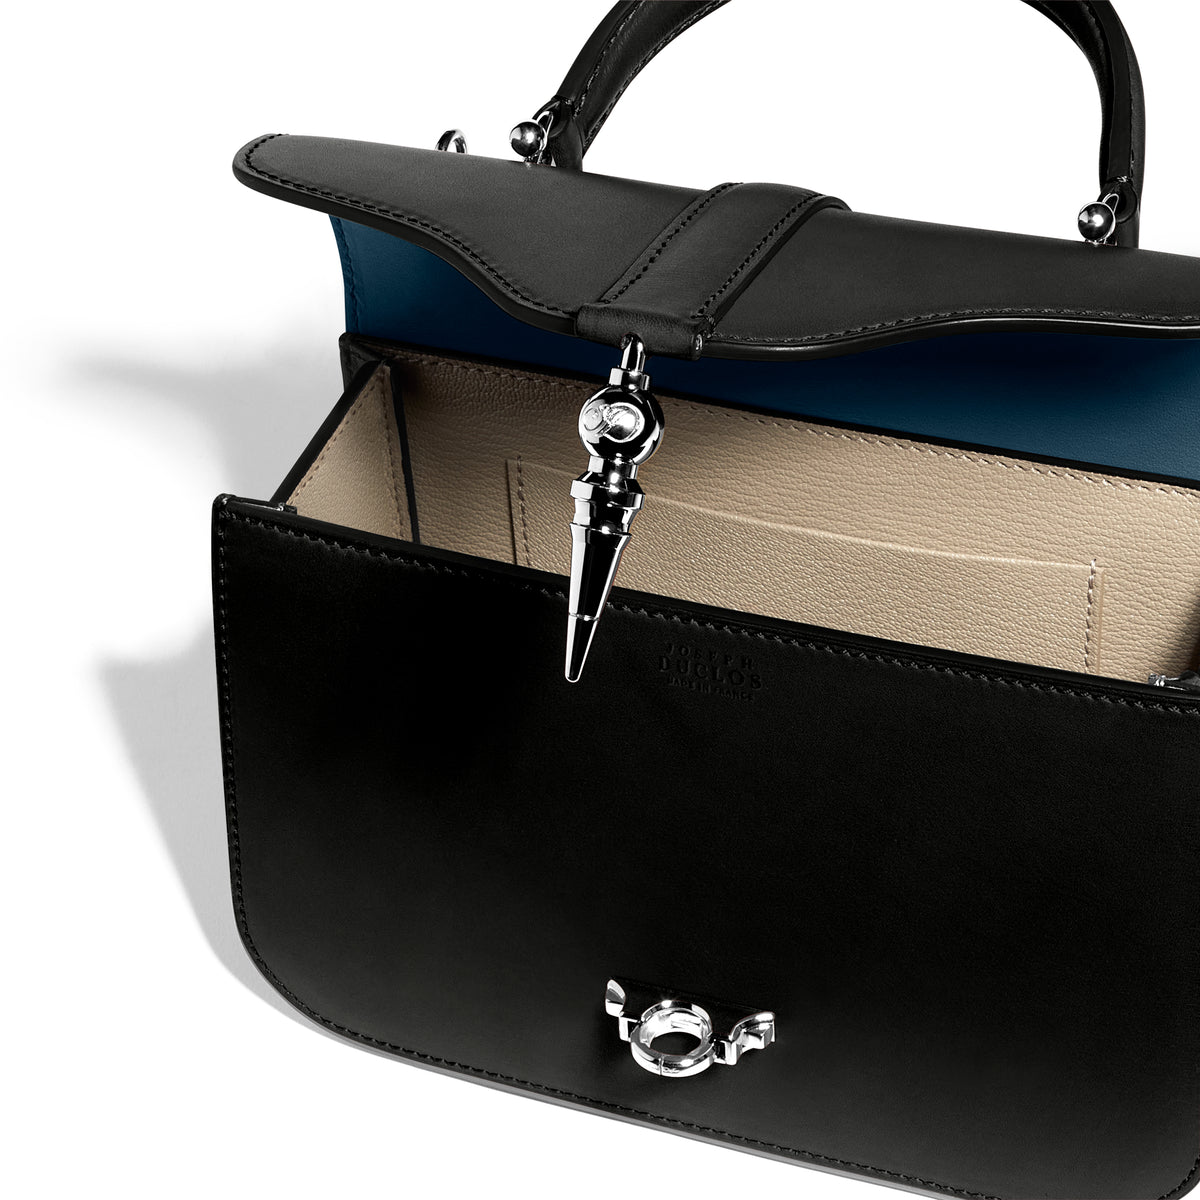 LL LEATHER LAND DESIGNER BAGS New LV Design Sling bag